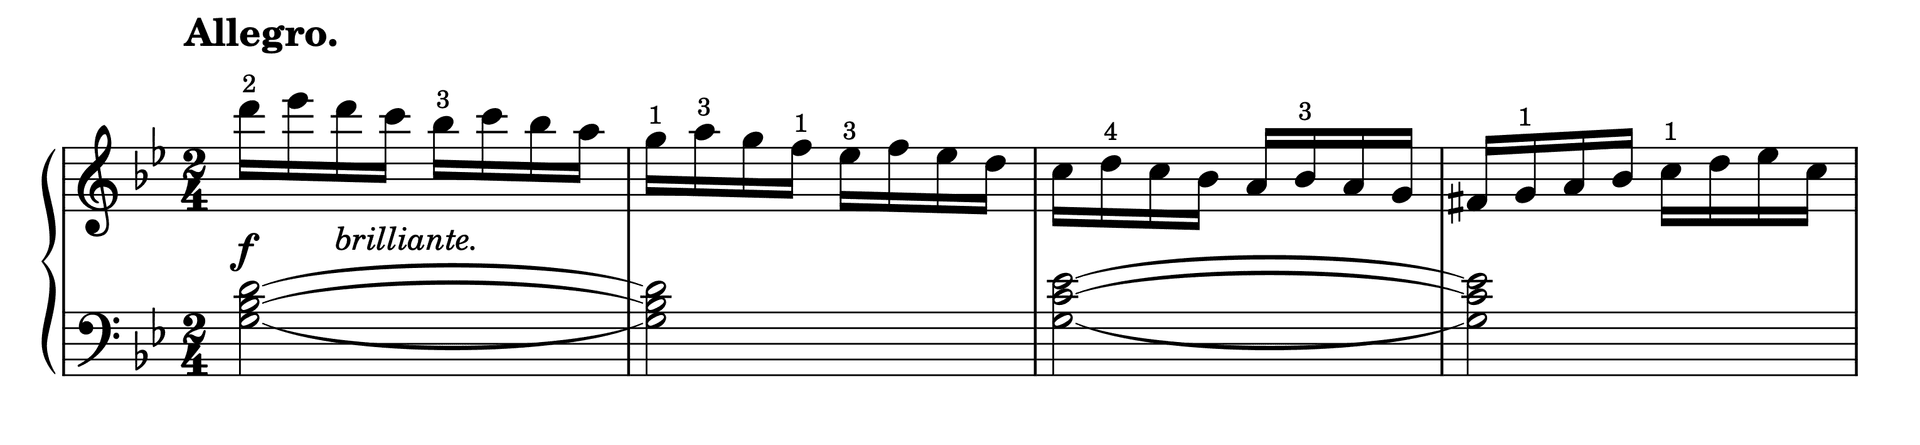 Excerpt of Etude in G Minor Op. 37, No. 31